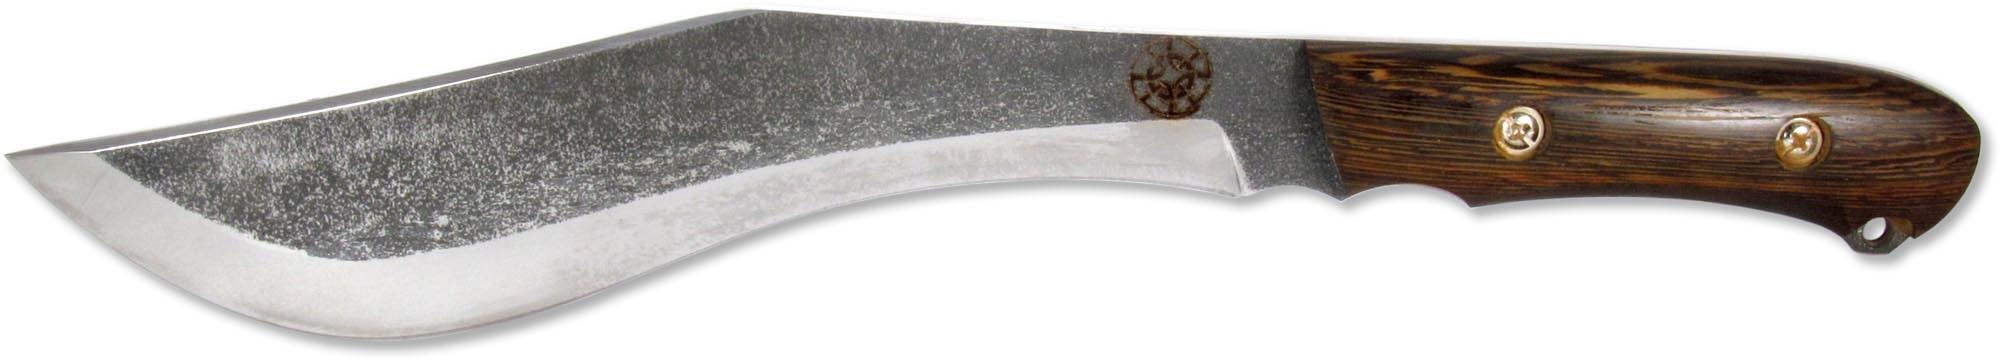 КОЛОВРАТ (6631)к Мачете кованая сталь венге с кожаным чехлом НМ-1003